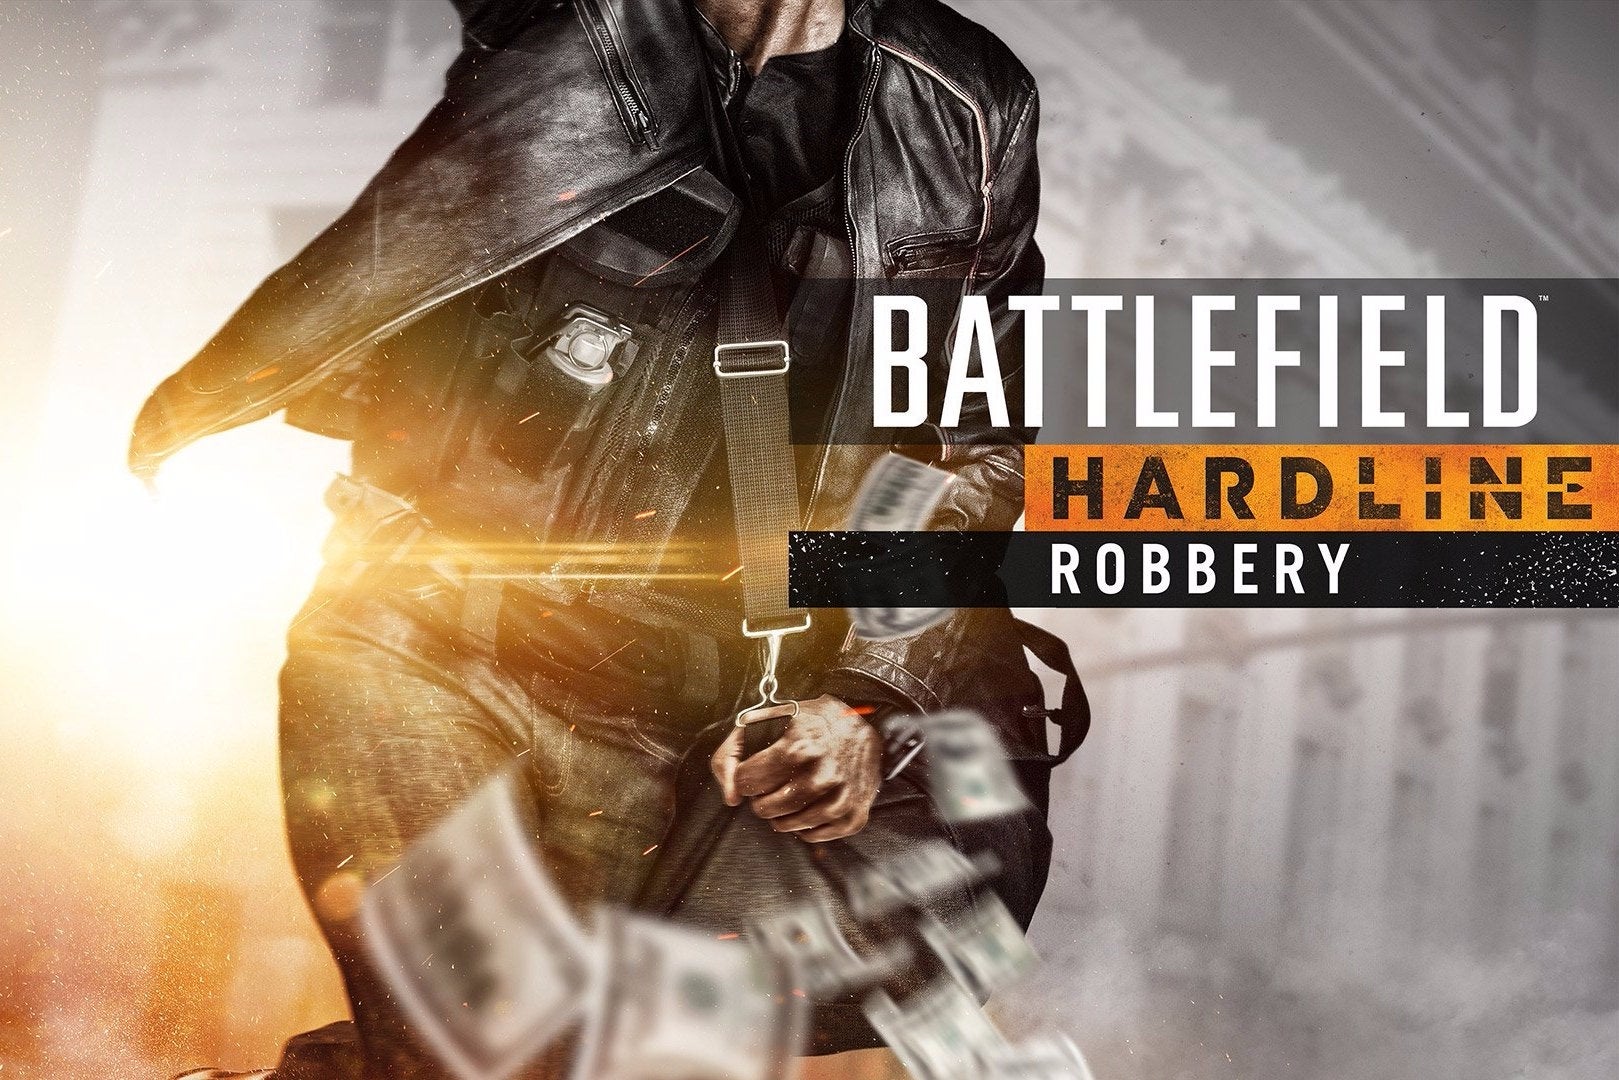 Image for Battlefield Hardline details next DLC expansion Robbery